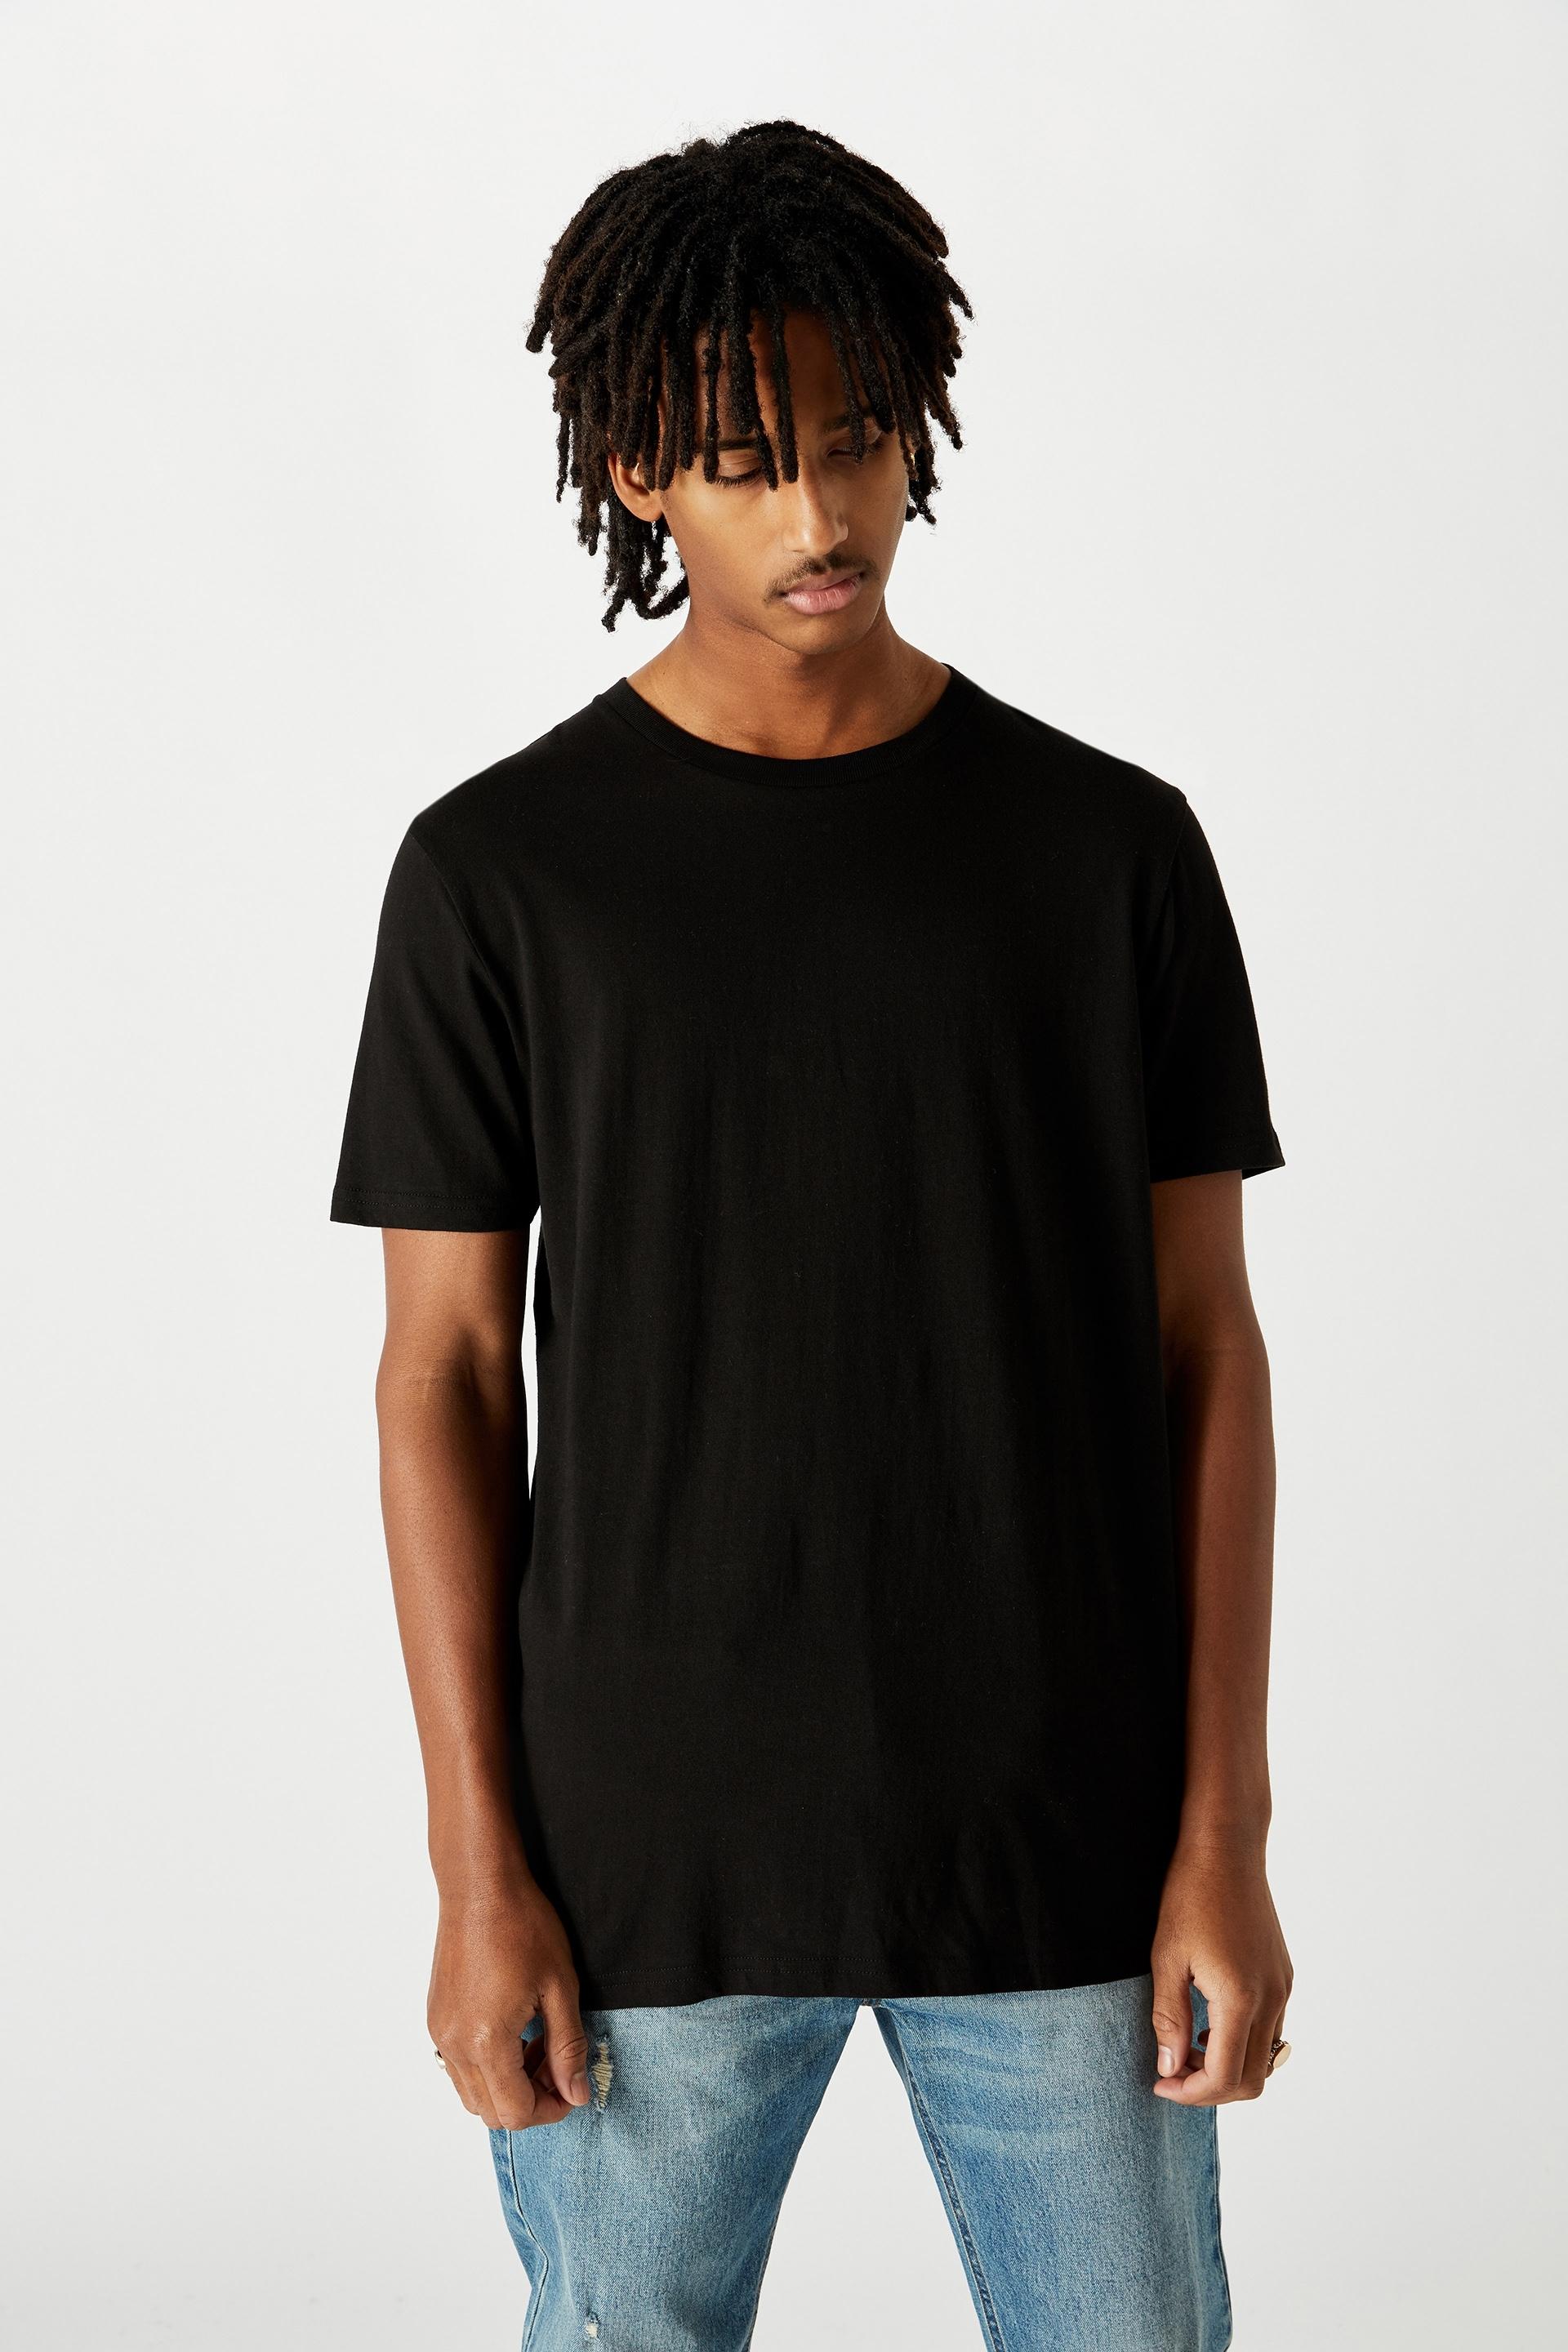 Slim t shirt - black Factorie T-Shirts & Vests | Superbalist.com